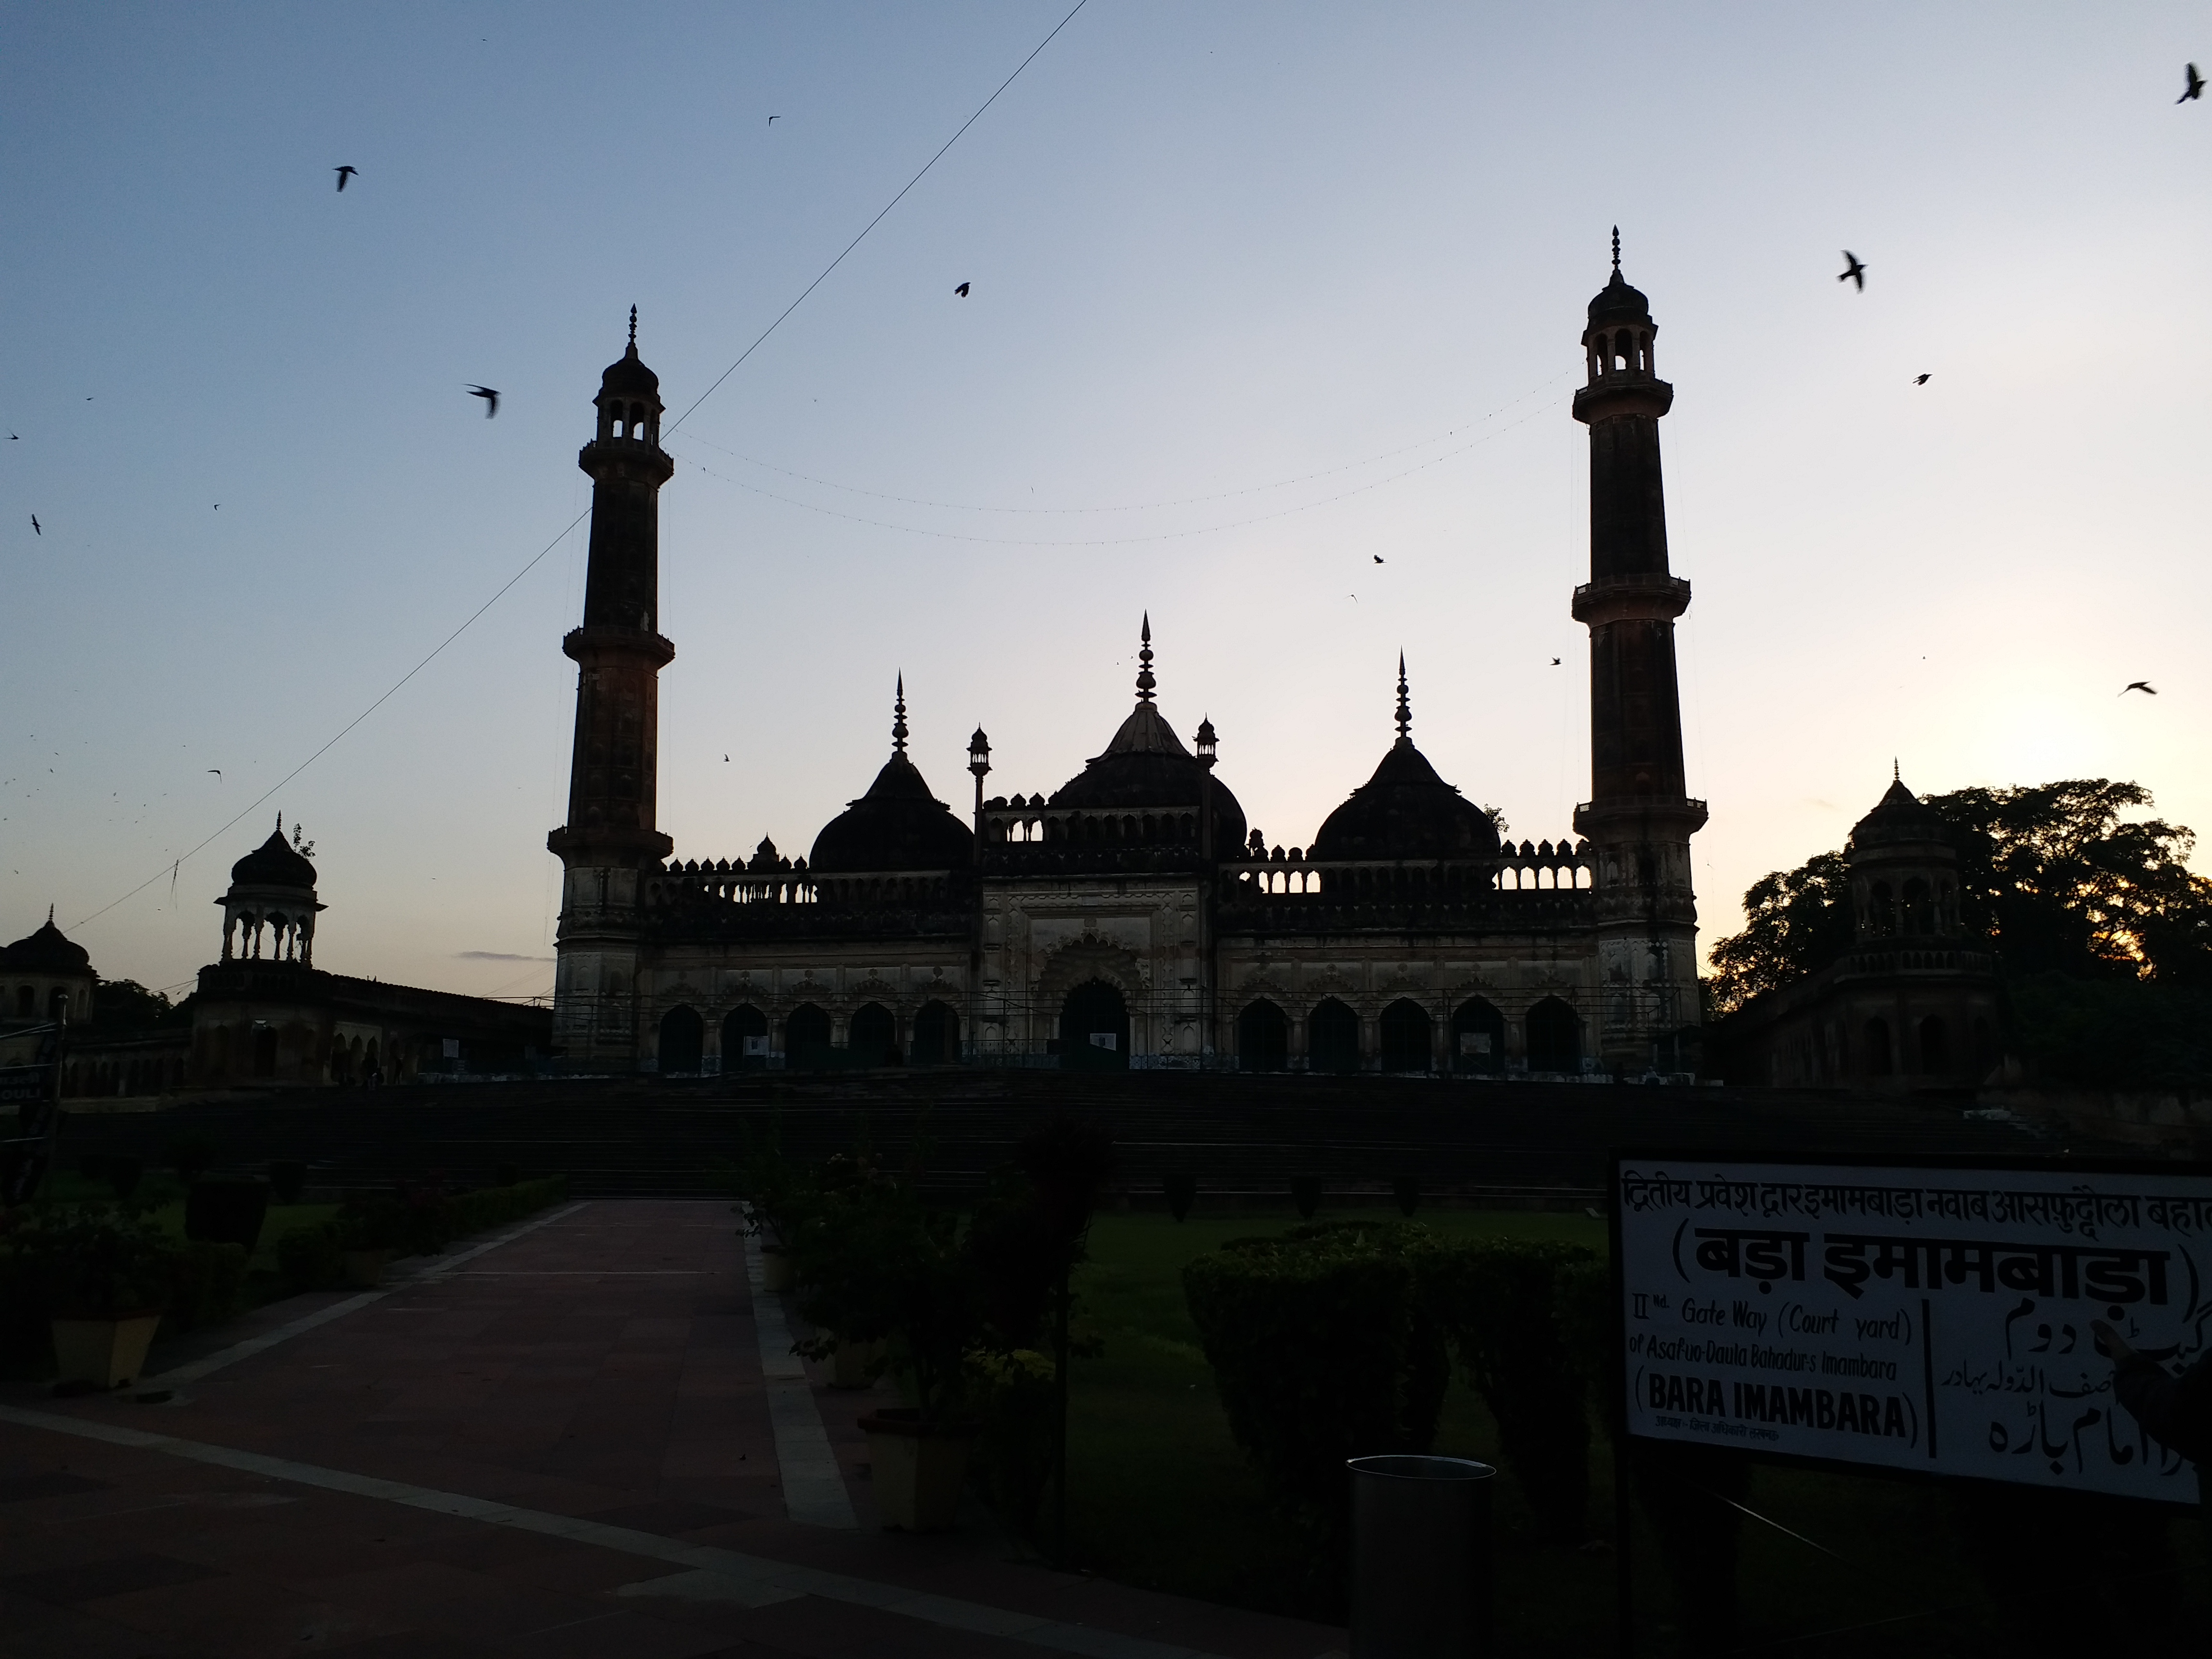 لکھنؤ: تاریخی آصفی مسجد کا شامِ اودھ کی جھلک پیش کرنے والا خوبصورت منظر